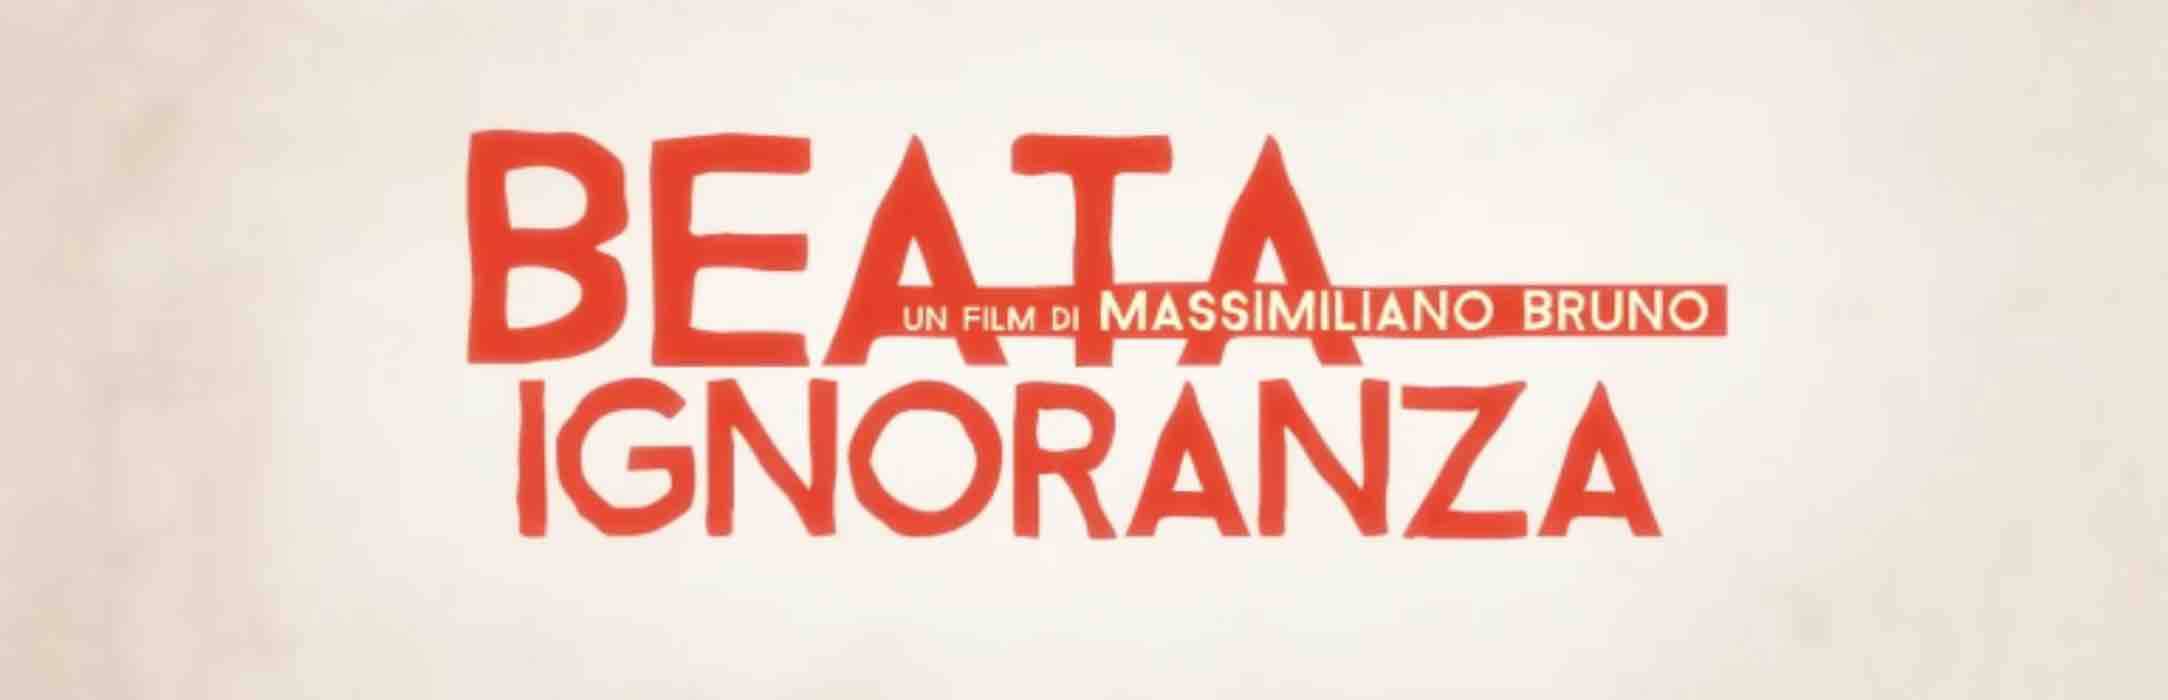 Beata ignoranza: info, trama e curiosità del film con Alessandro Gassmann